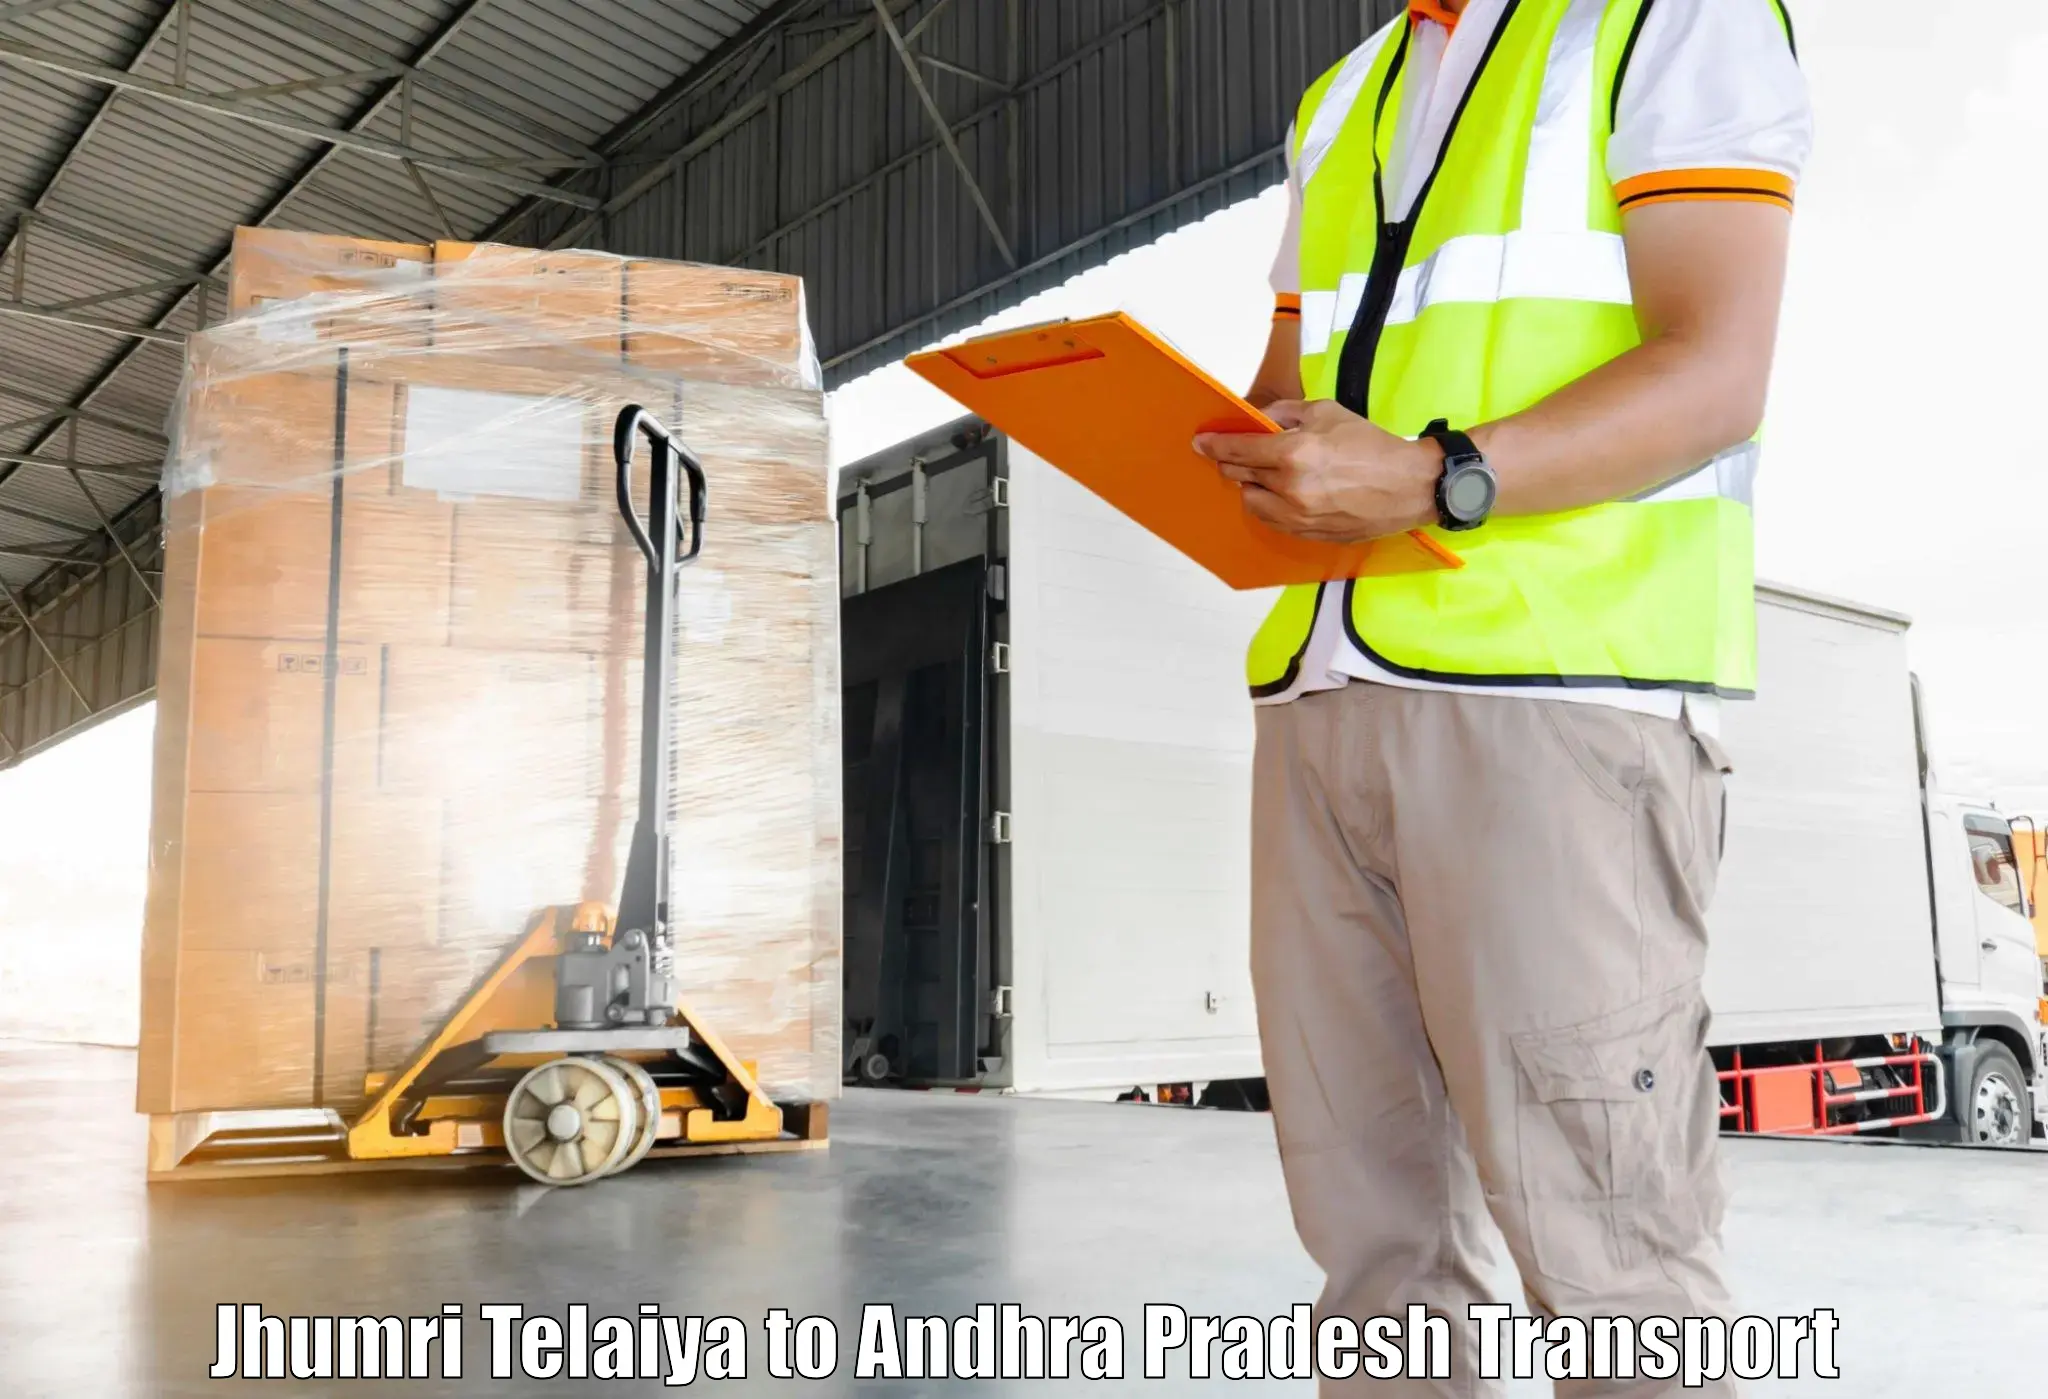 Lorry transport service Jhumri Telaiya to Andhra Pradesh